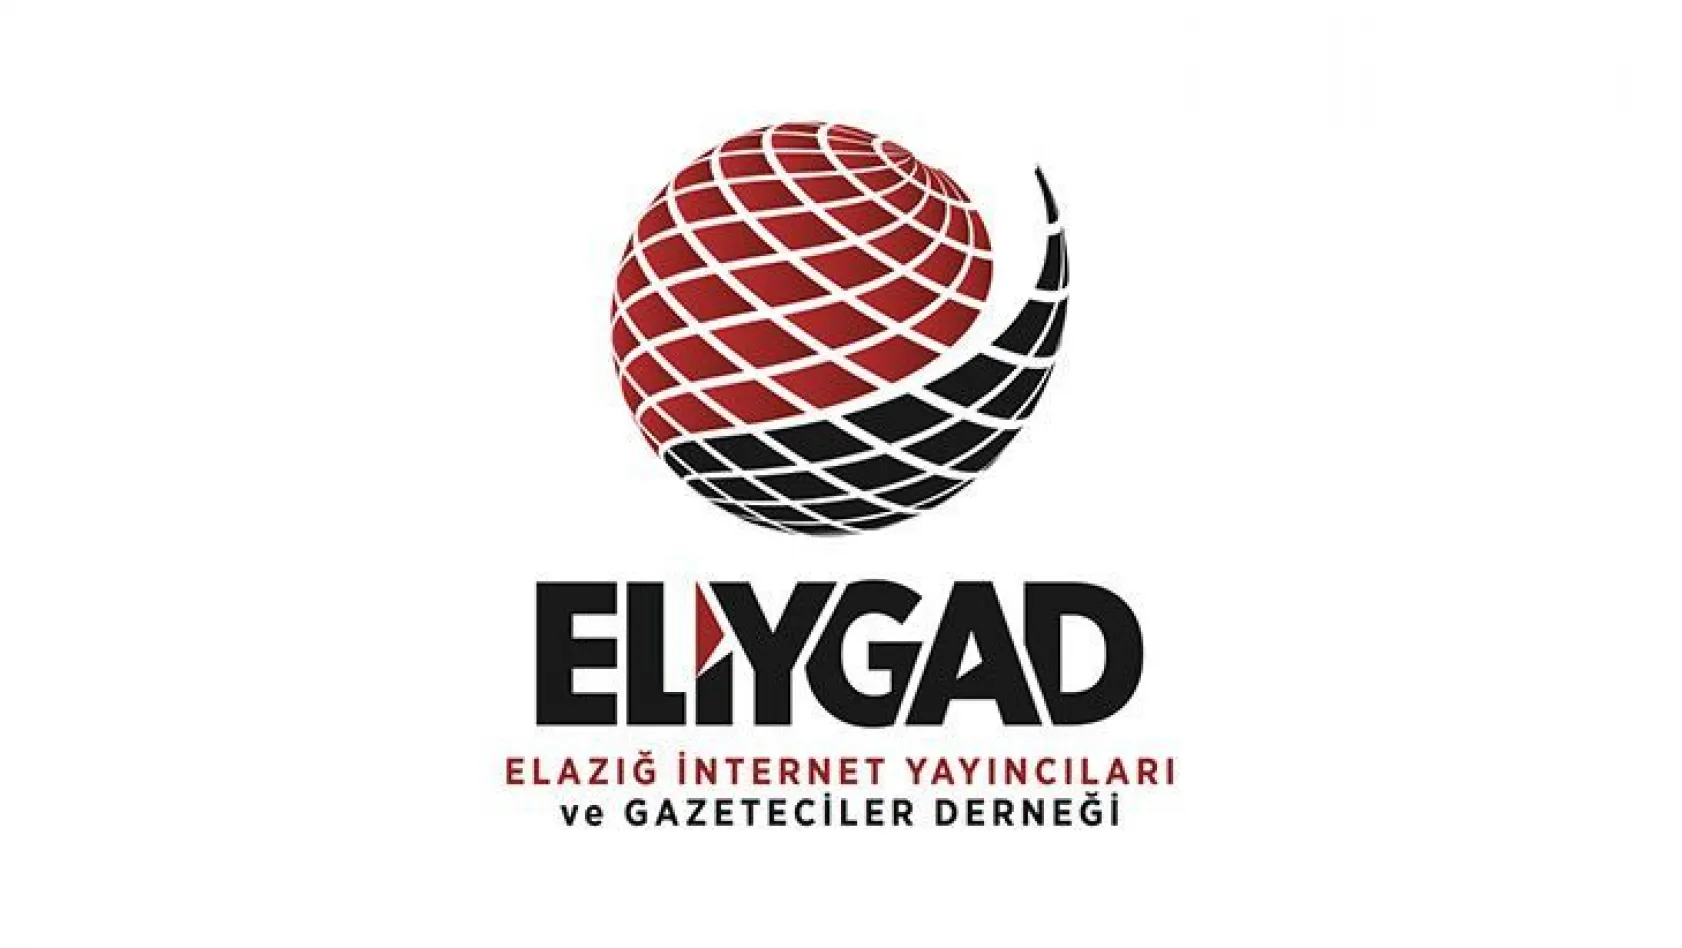 ELİYGAD'a katılım devam ediyor